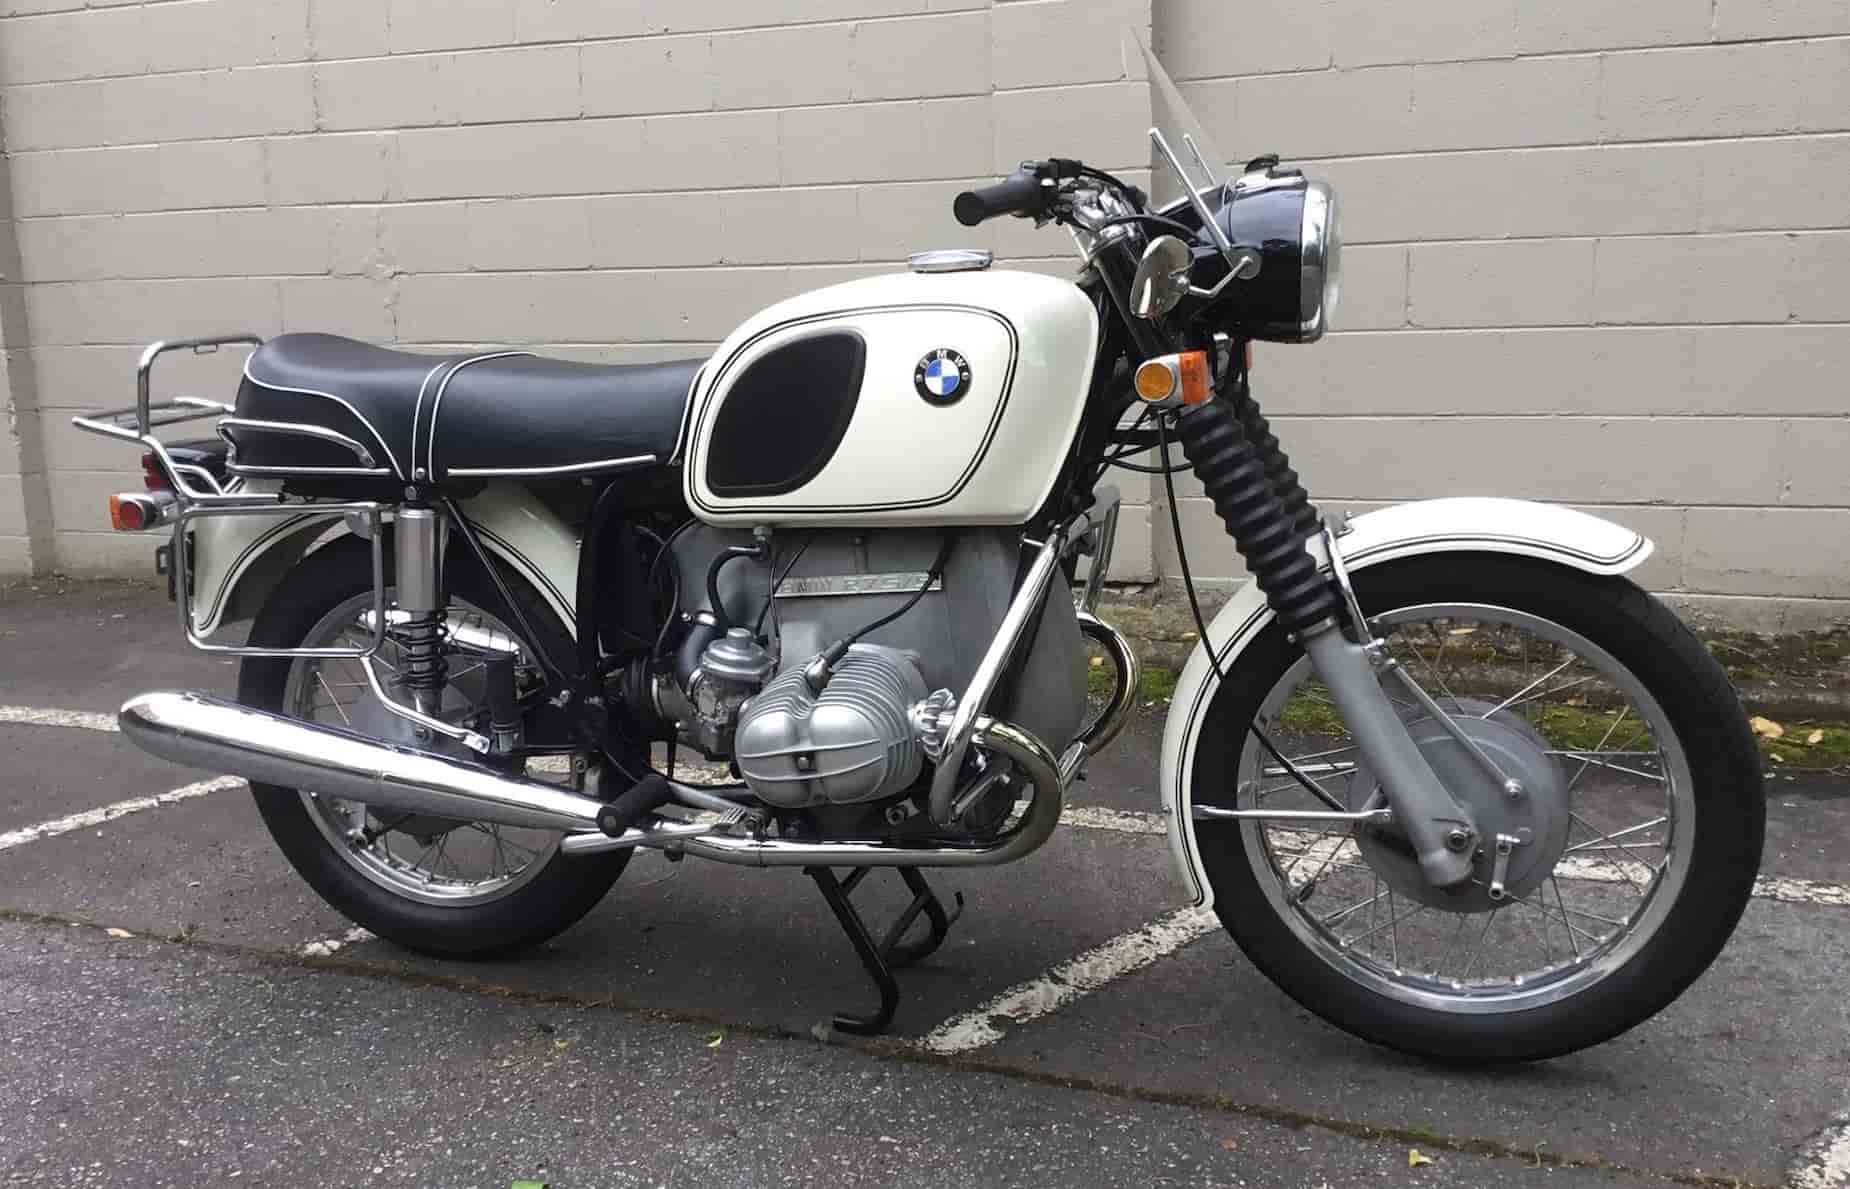 На аукцион выставили восстановленный BMW R75/5 1971 года выпуска